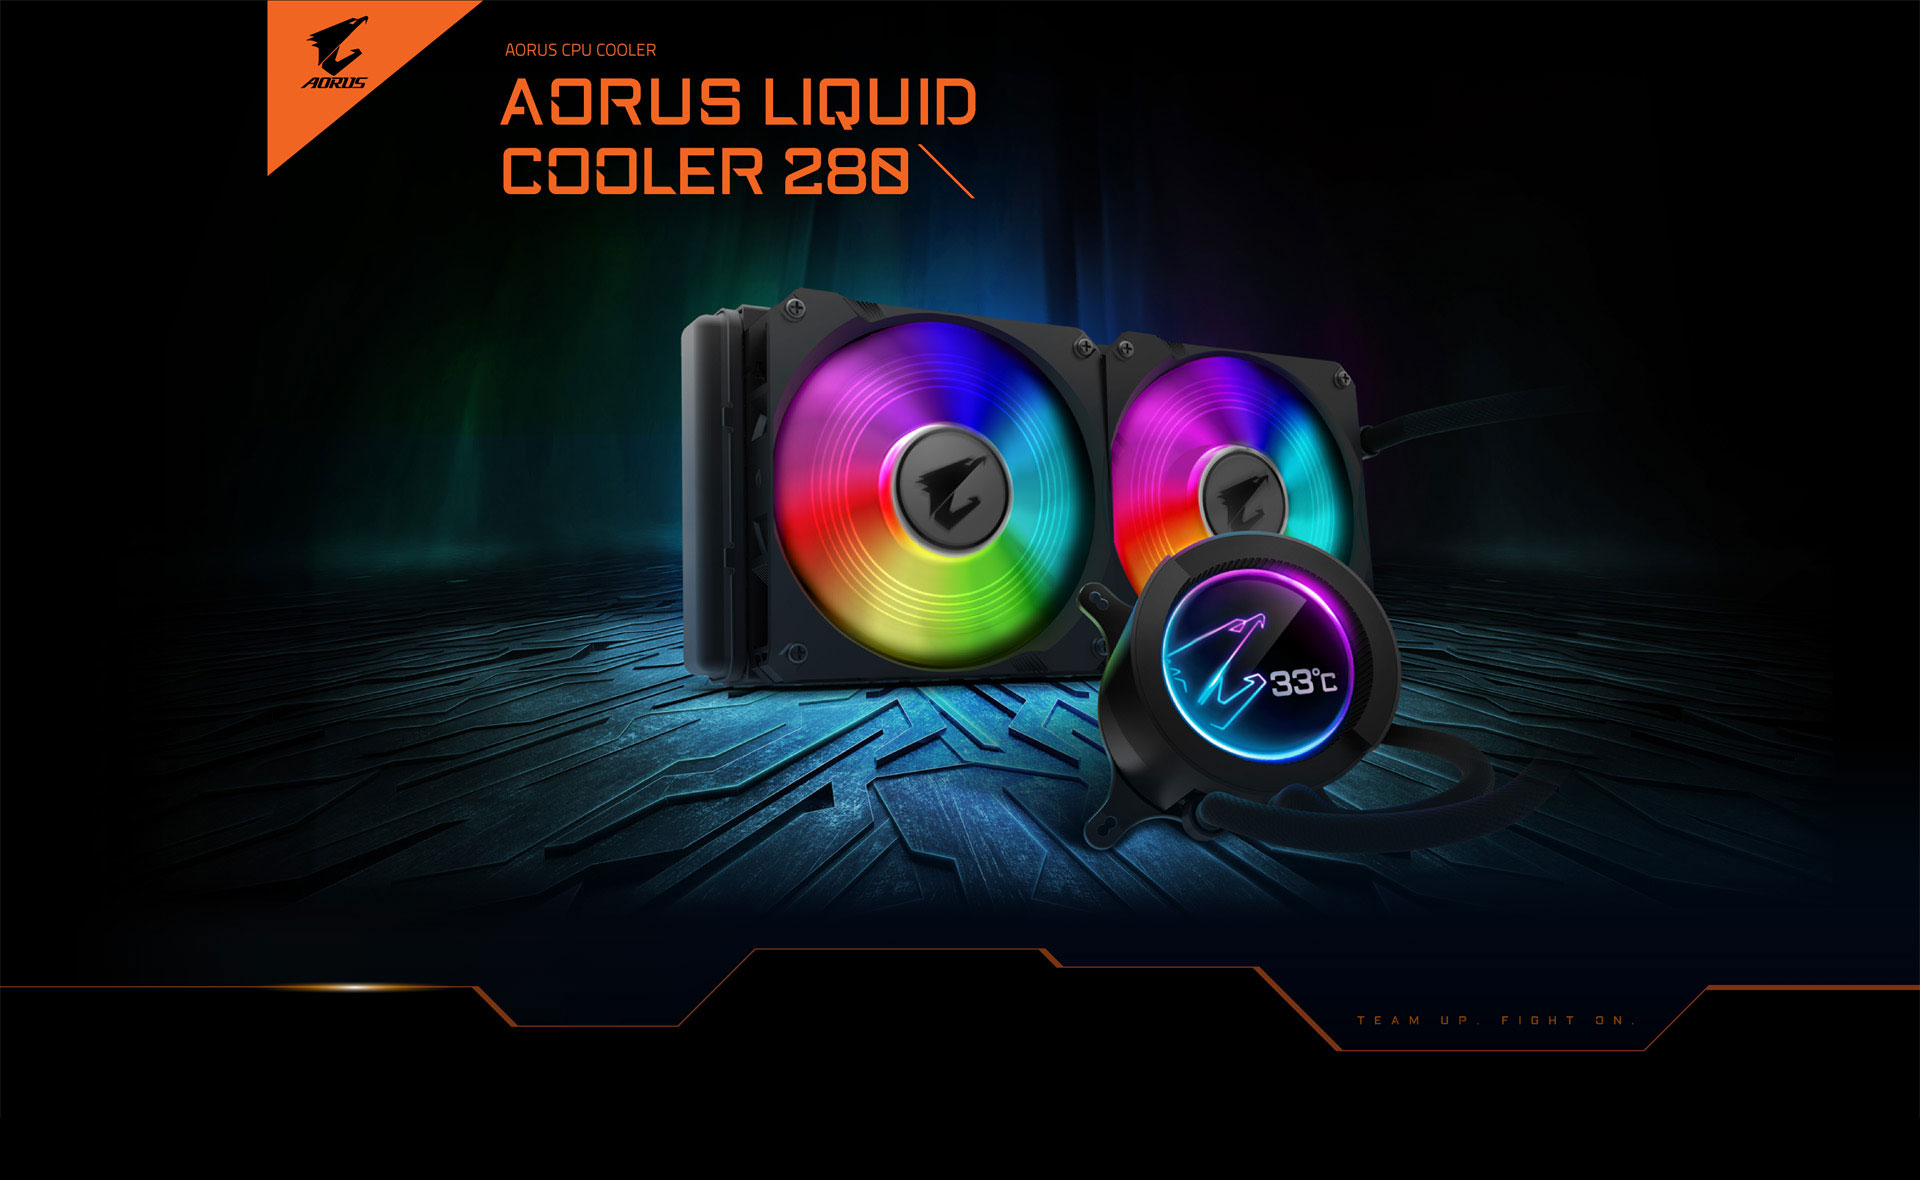 Zachte voeten te ontvangen Schandalig AORUS LIQUID COOLER 280 Key Features | CPU Cooler - GIGABYTE Global